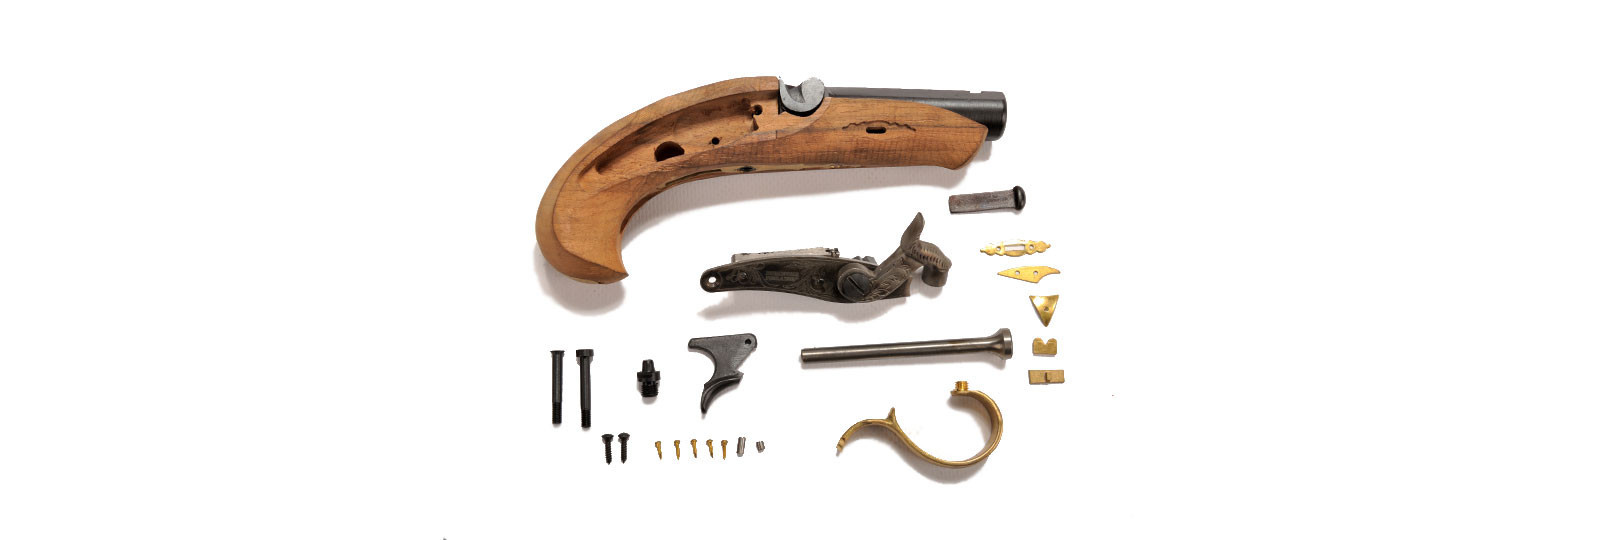 Deringer Philadelphia pistol kit